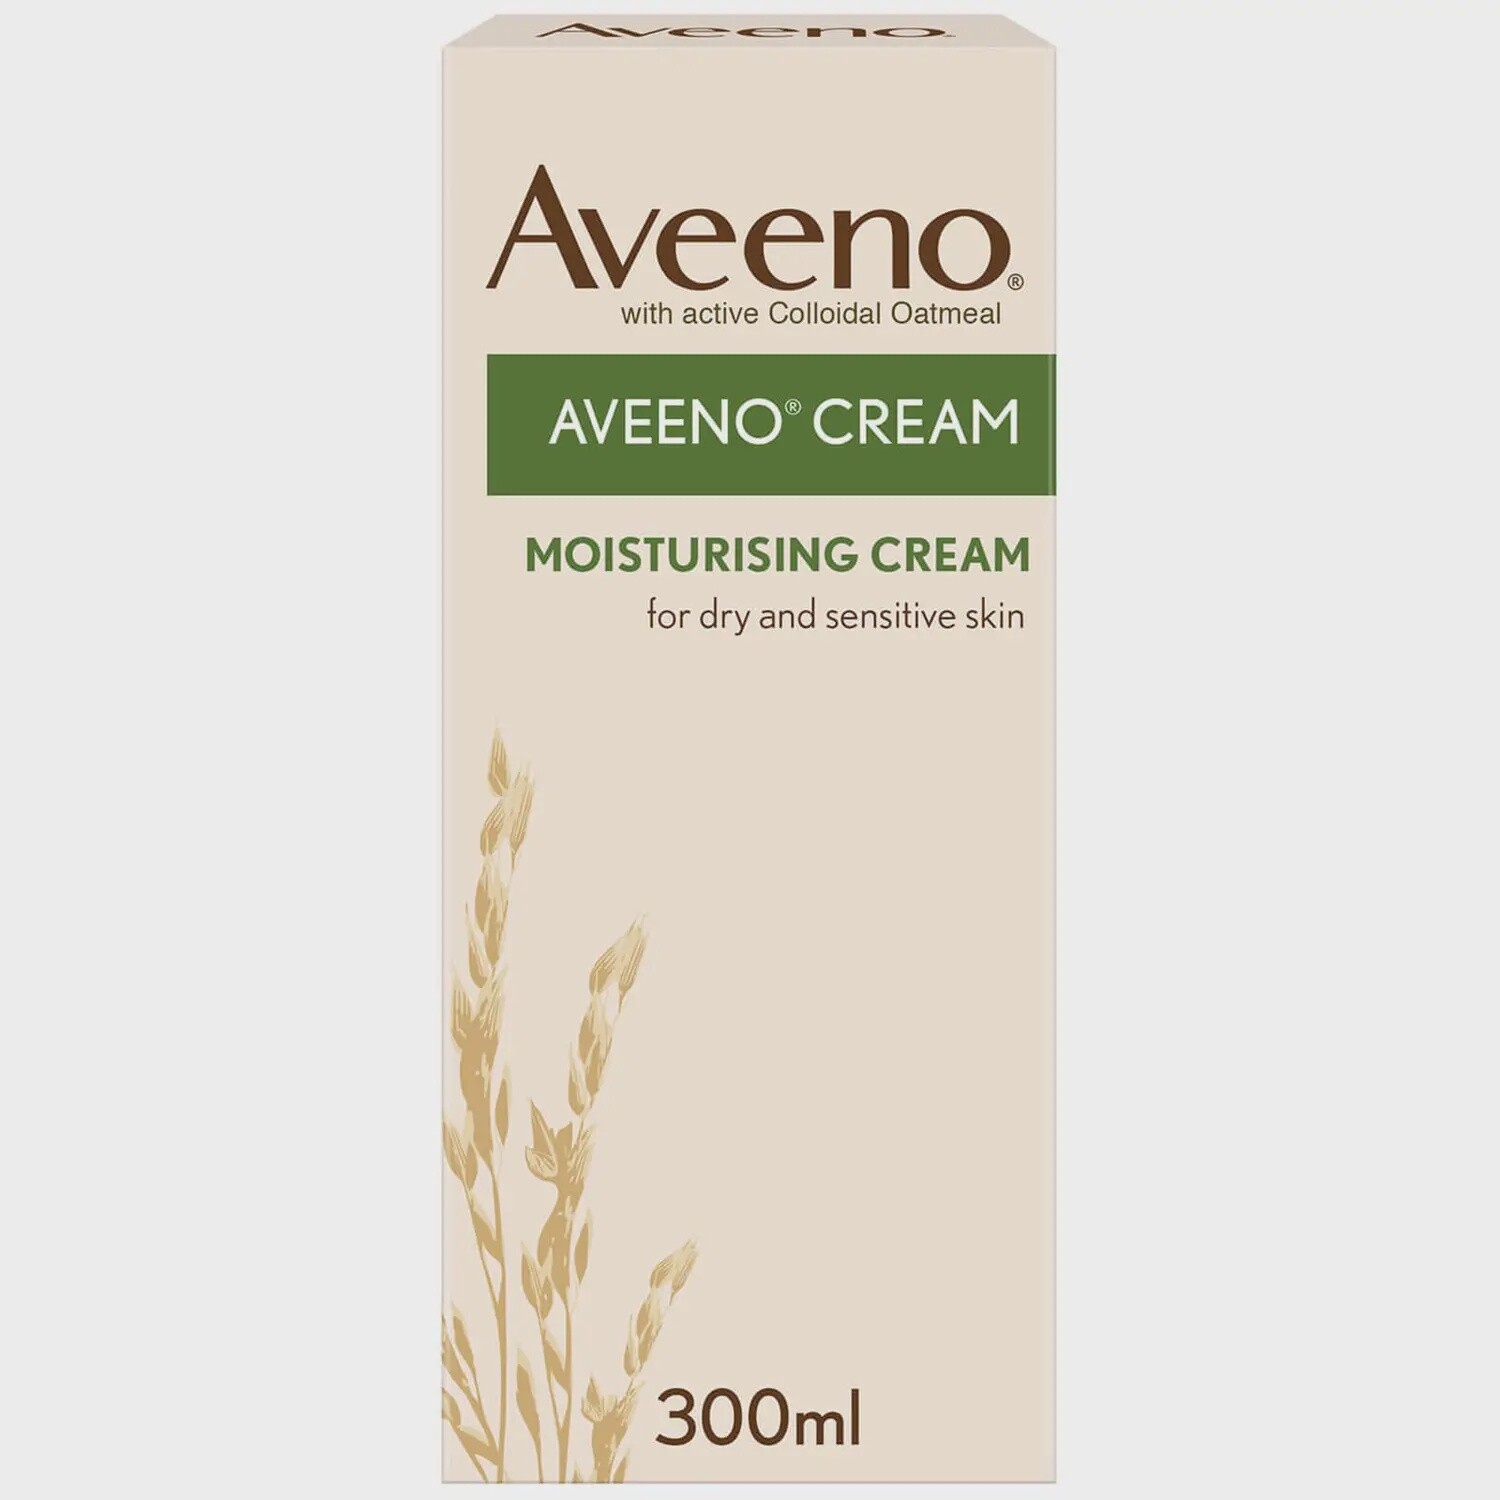 Aveeno Cream Moisturising Cream